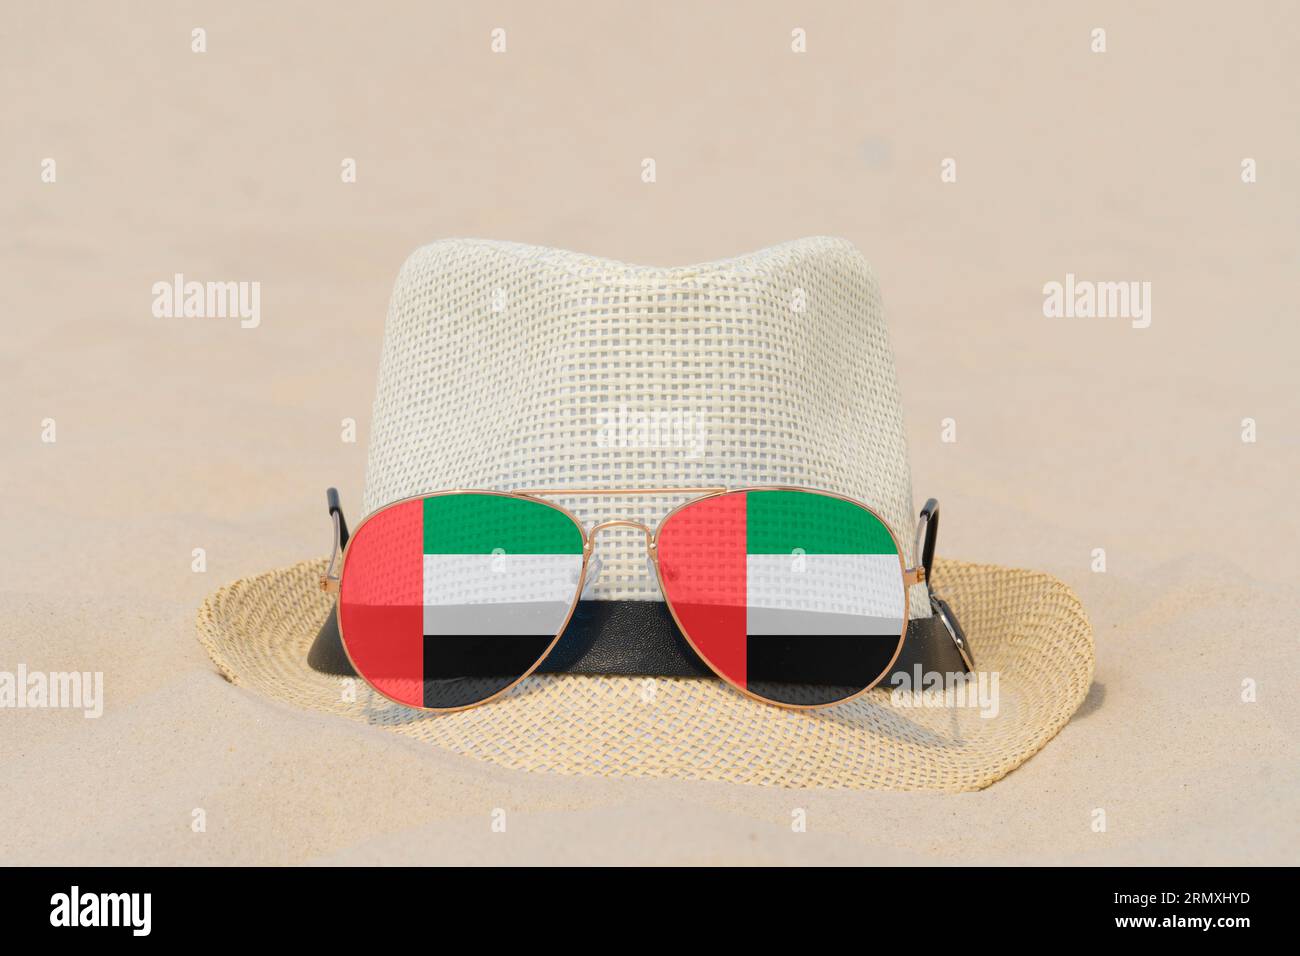 Sonnenbrille mit Brille in Form einer Flagge der Vereinigten Arabischen Emirate und einem Hut liegen auf Sand. Konzept der Sommerferien und Reisen in den Vereinigten Arabischen Emiraten Stockfoto